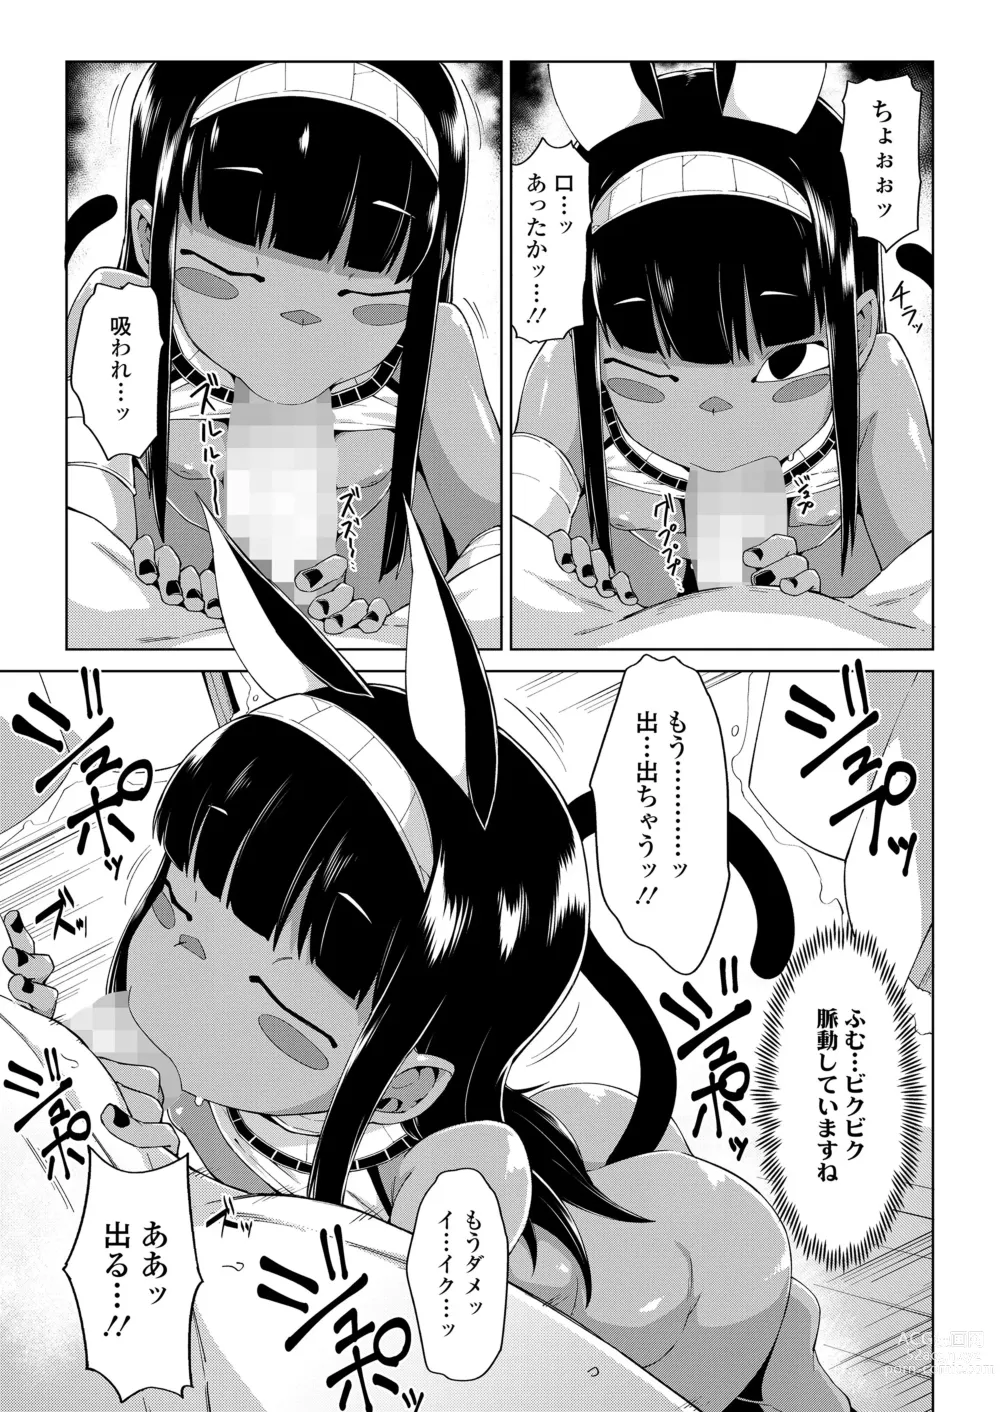 Page 13 of manga Towako Oboro Emaki 13